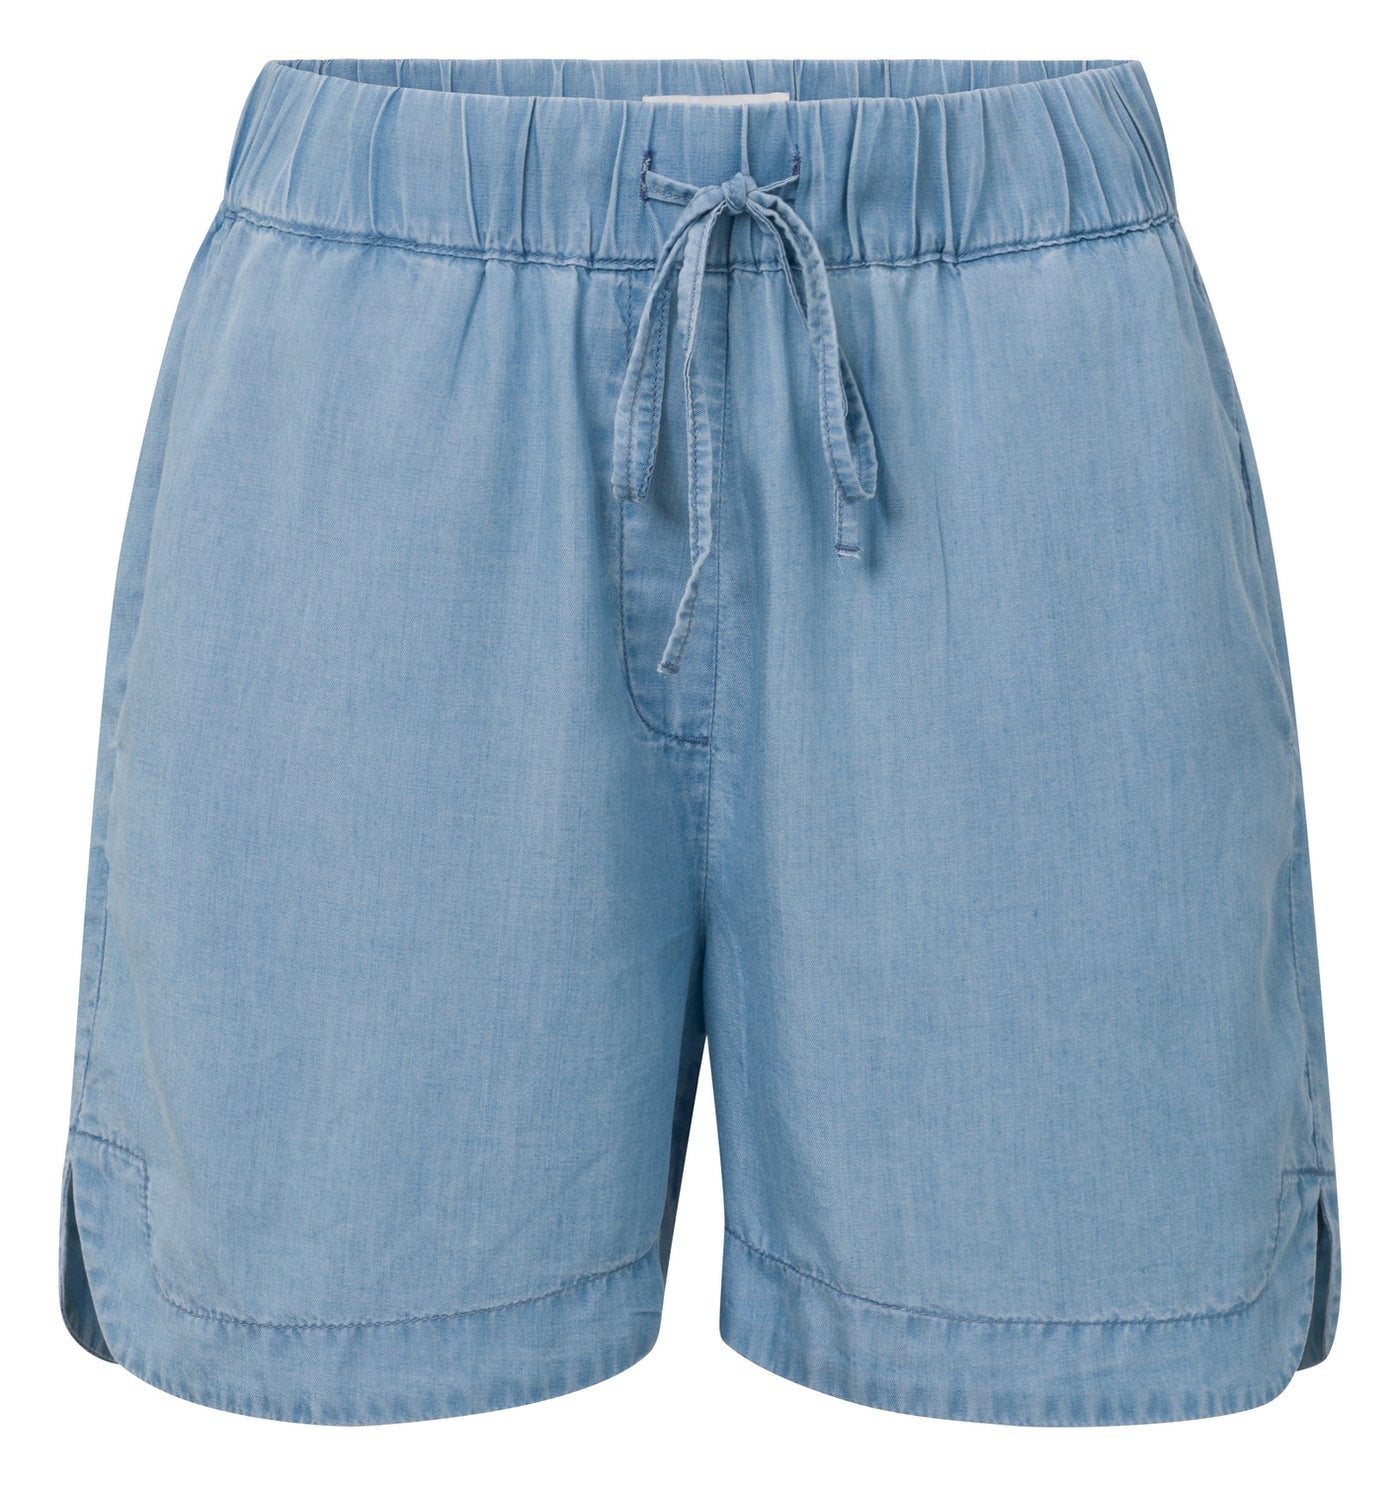 Chambray Shorts 01-321018-404